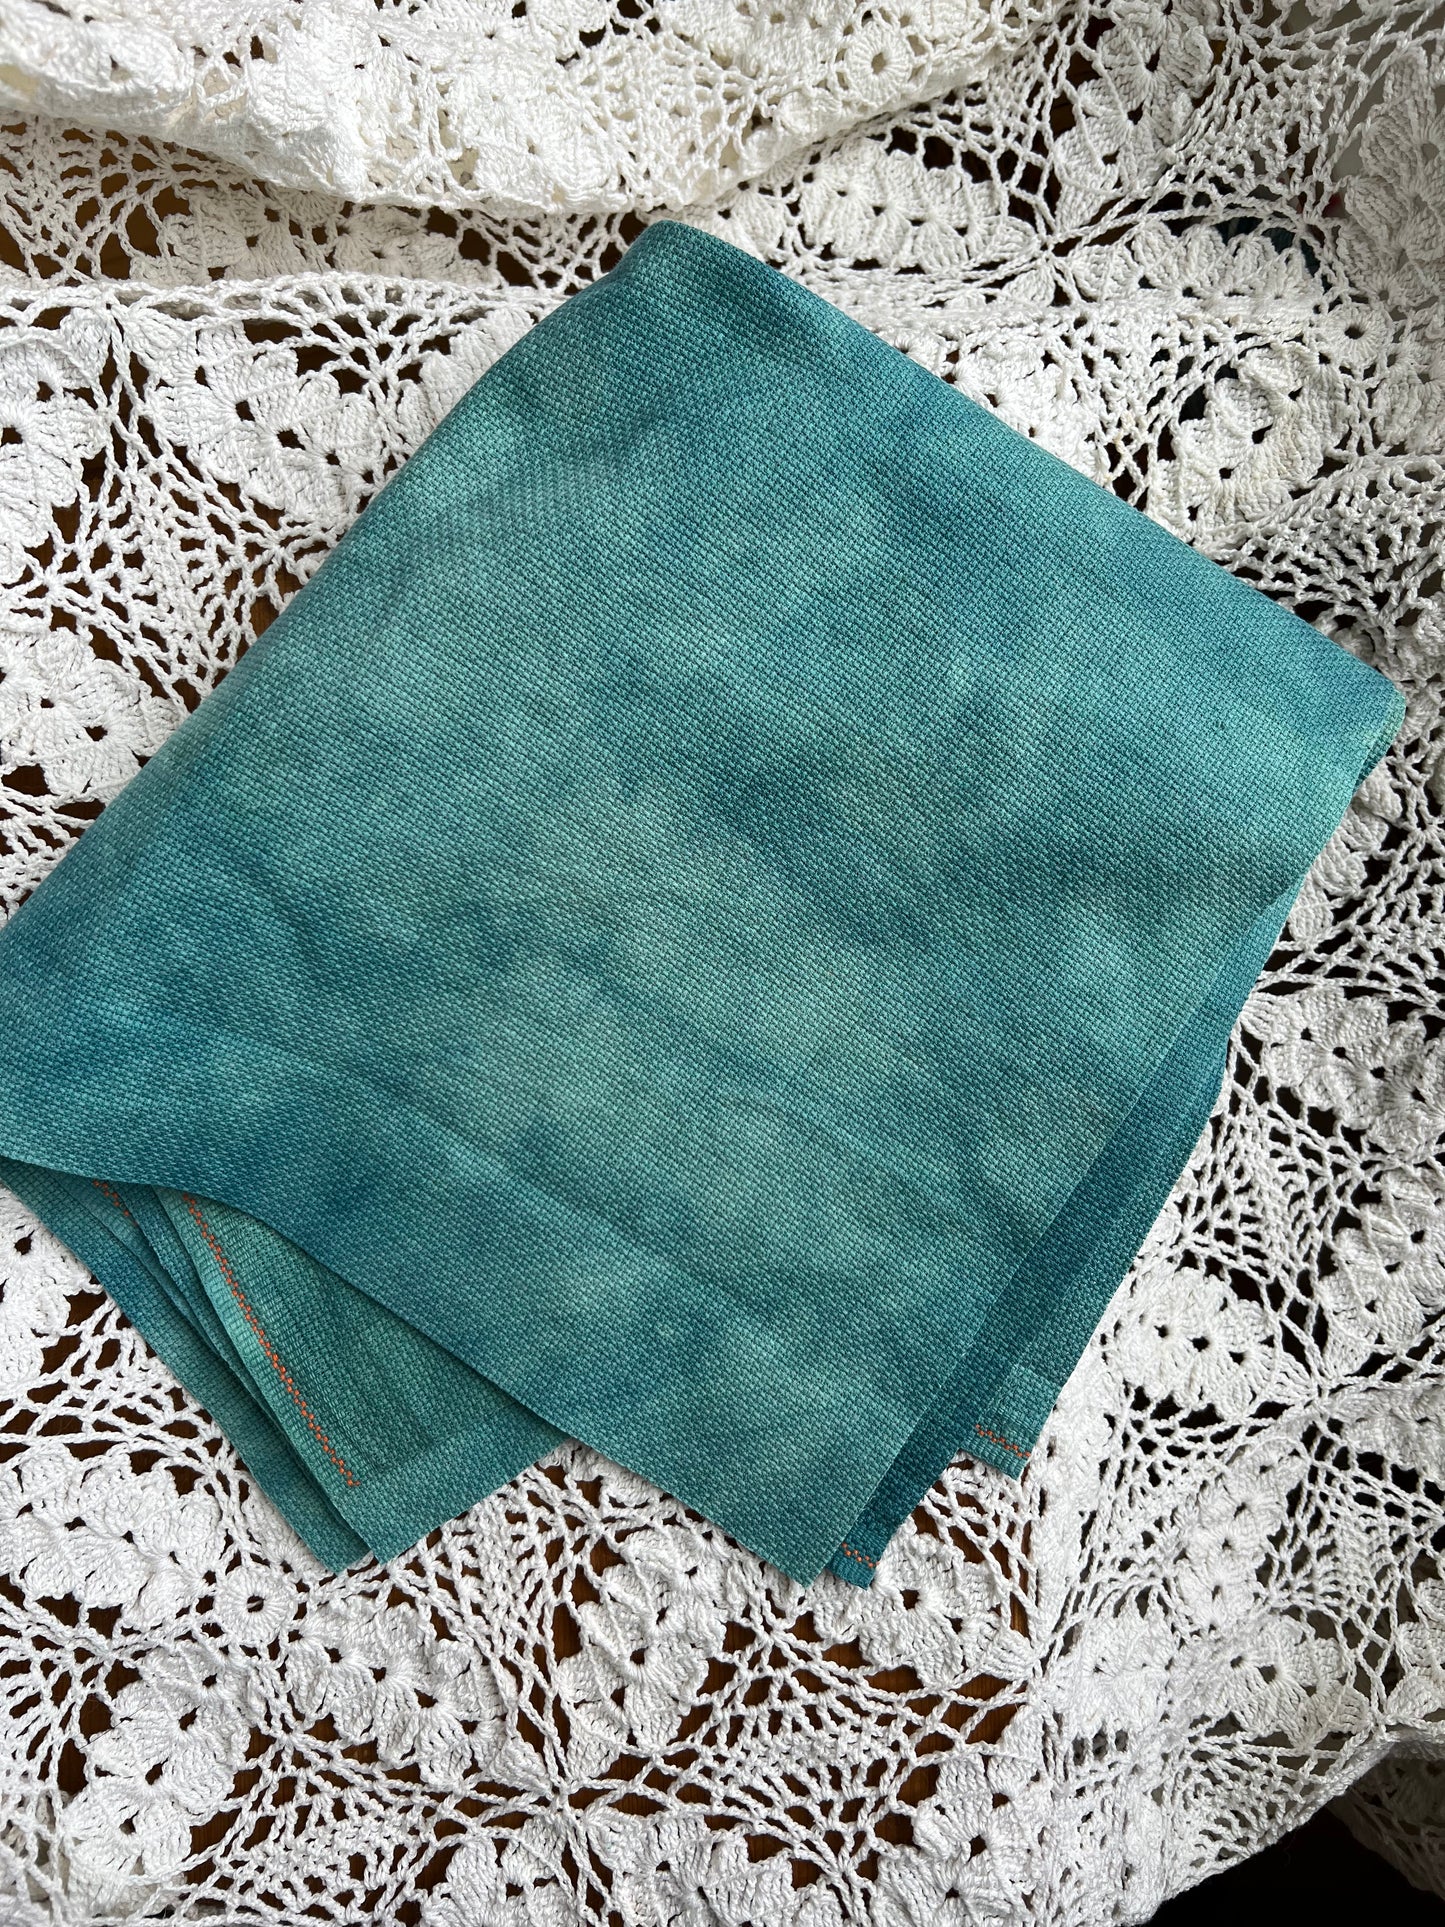 New Fabric Colour in Aida - Juniper